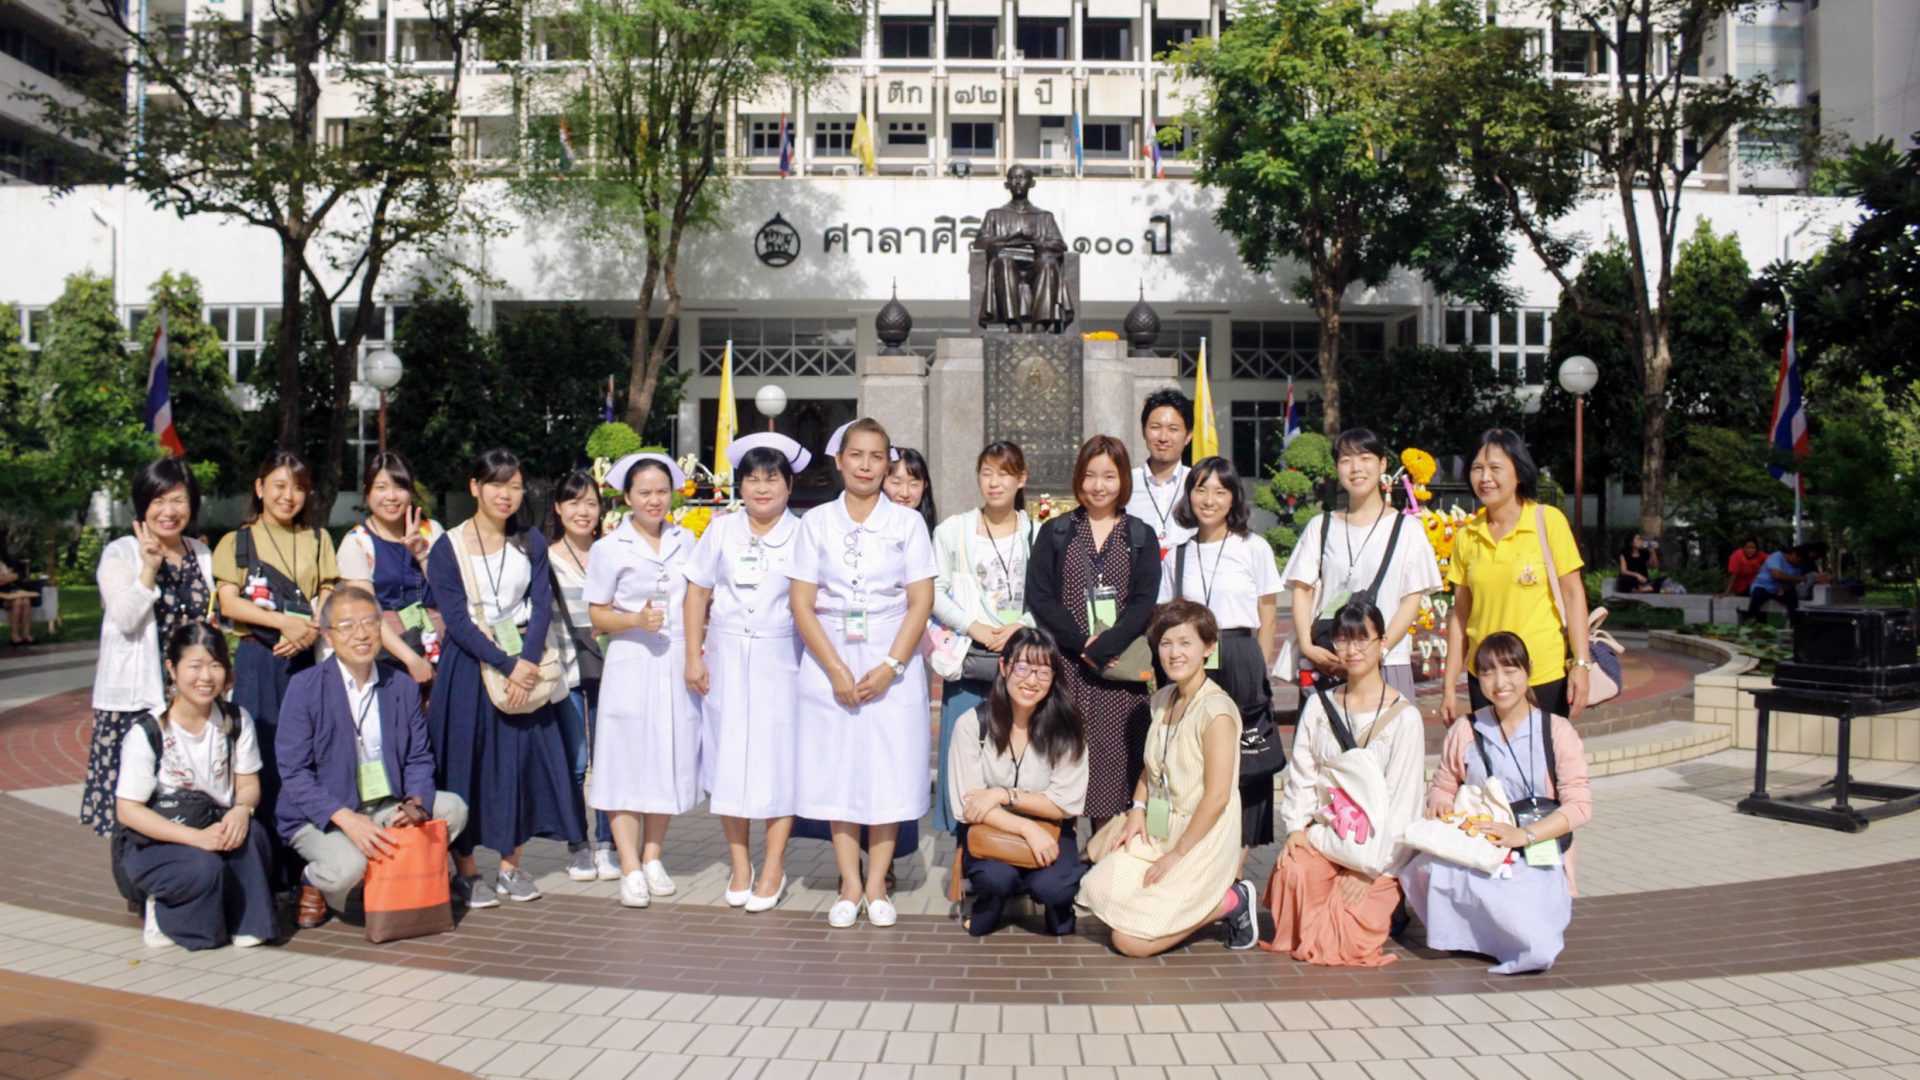 Students from Nagoya University Attend the Short Training Program at Siriraj